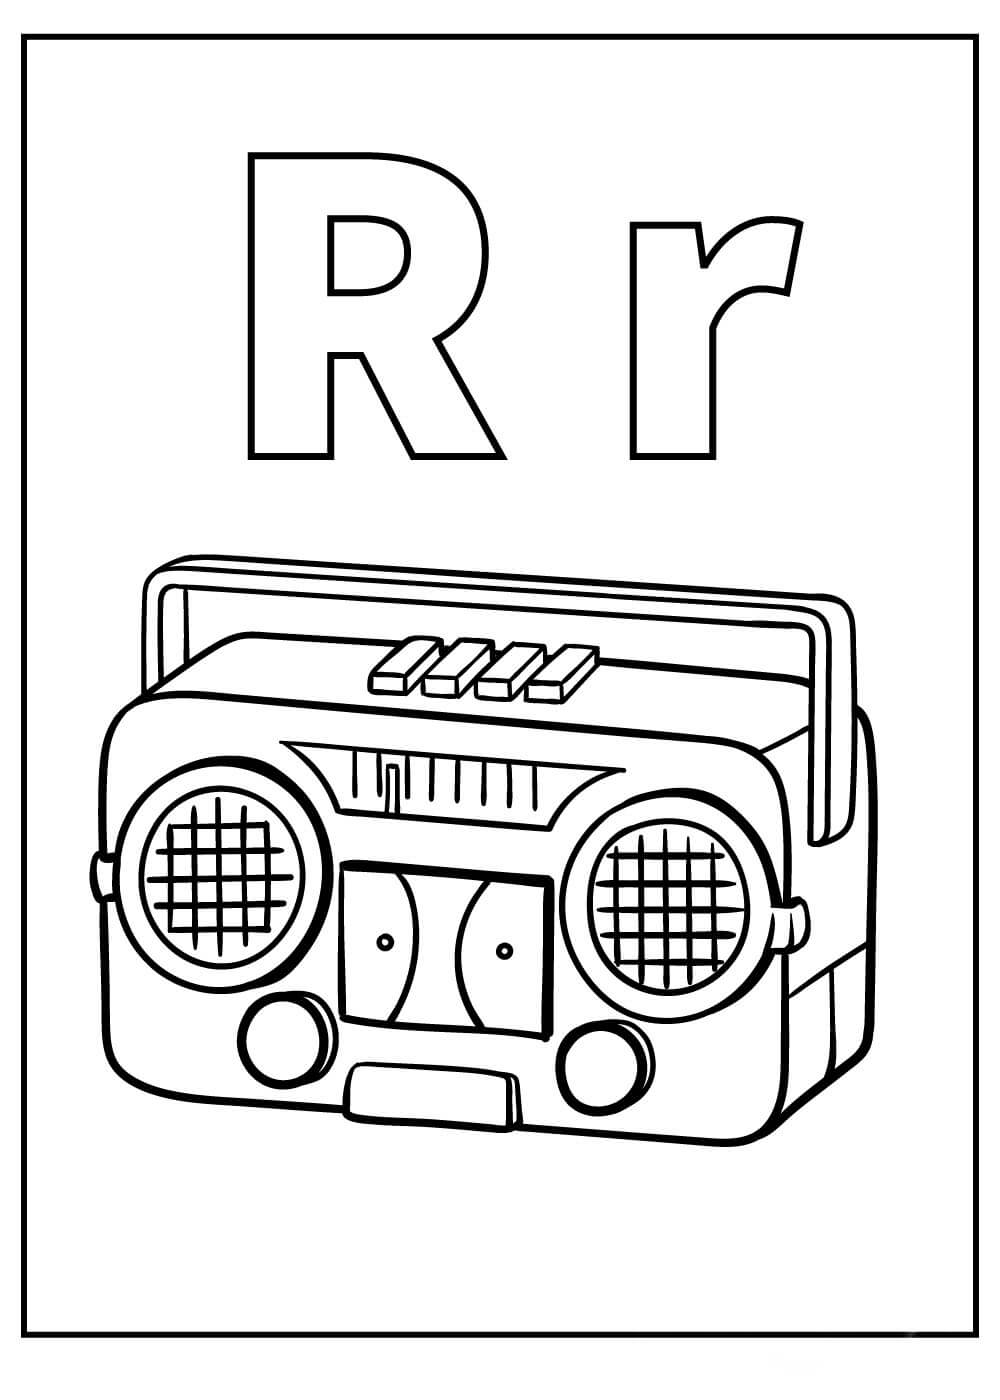 Letra R y Radio